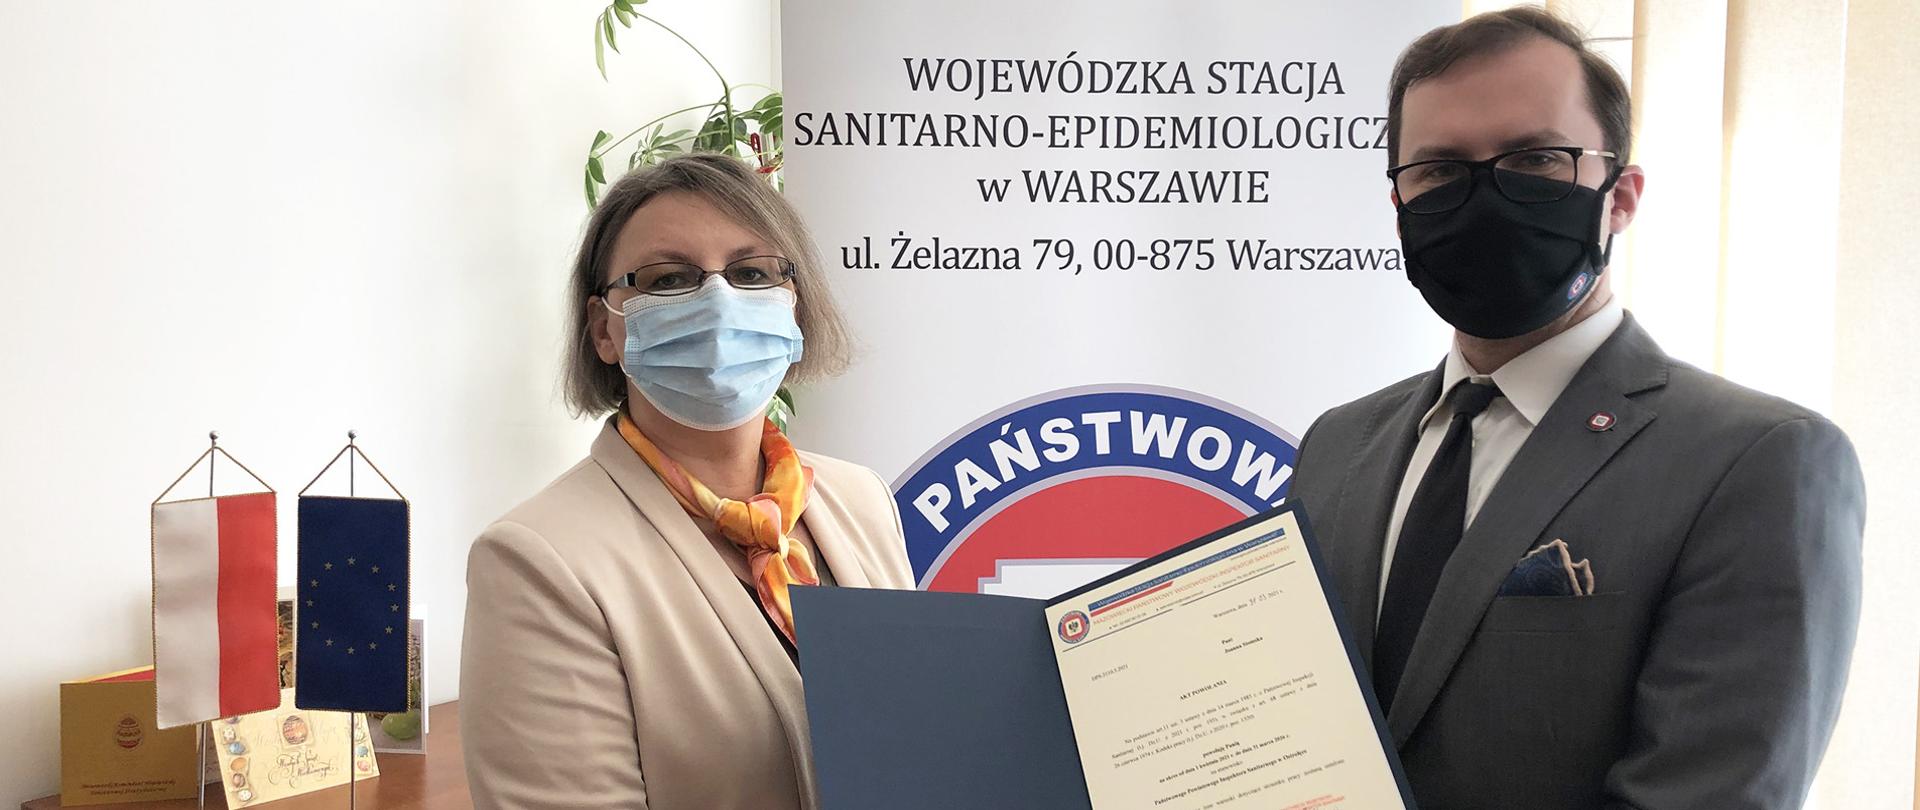 Od lewej stoi nowo powołana PPIS w Ostrołęce, pani mgr inż. Joanna Stomska, obok po prawej MPWIS - dr n. med.Przemysław Rzodkiewicz wręczający dokument z powołaniem 